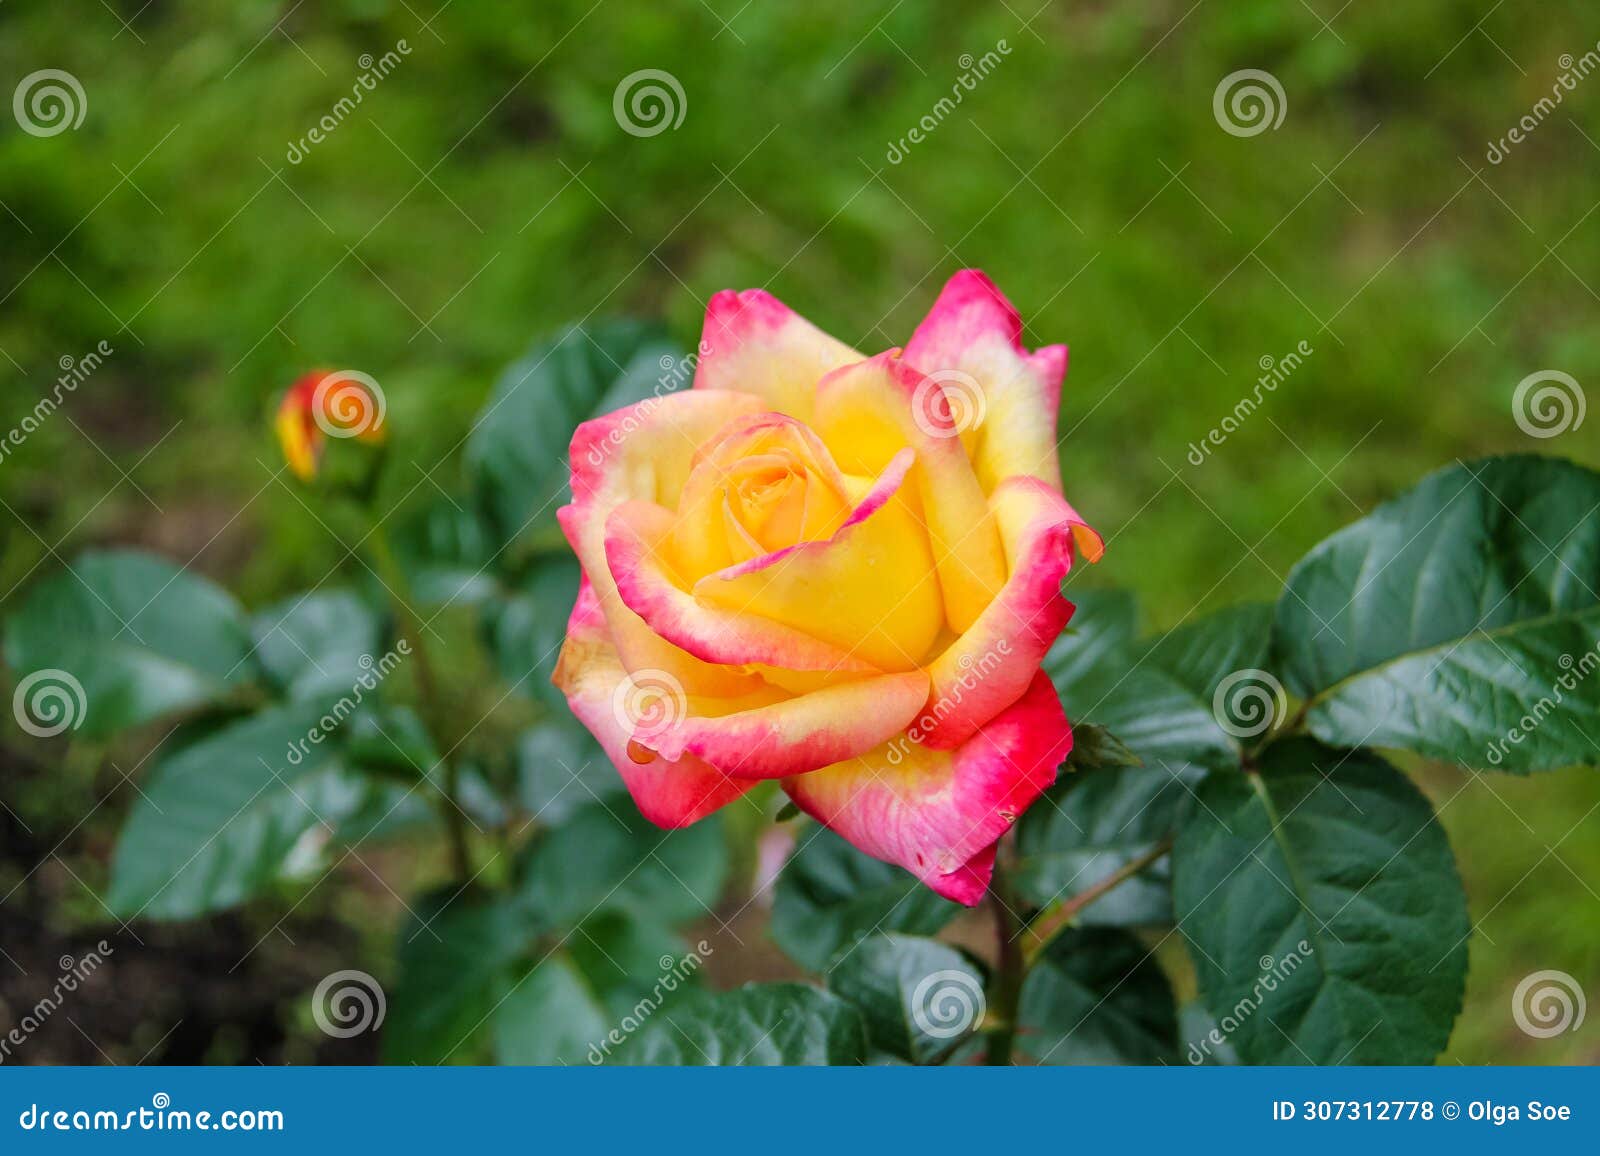 close-up of garden rose pullman orient express